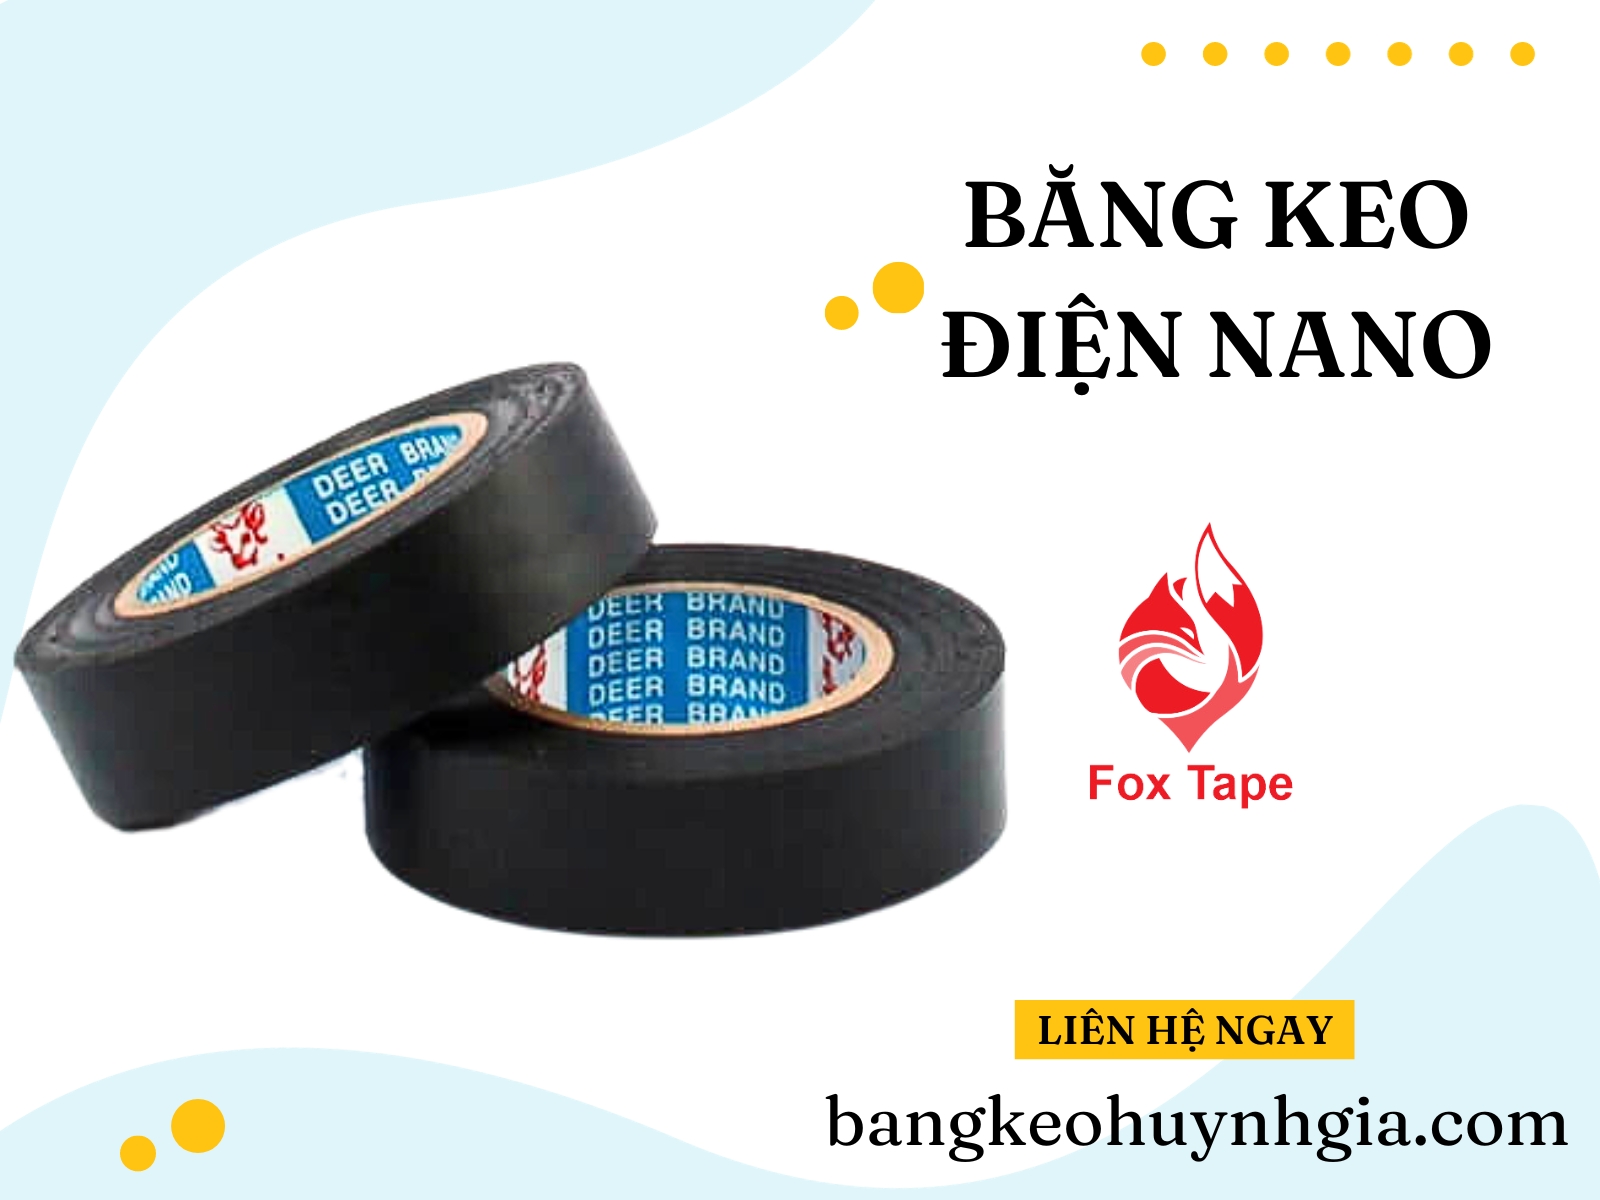 Băng Keo Điện Nano- Băng Keo Huỳnh Gia- Quận Bình Tân- Huỳnh Gia Tape